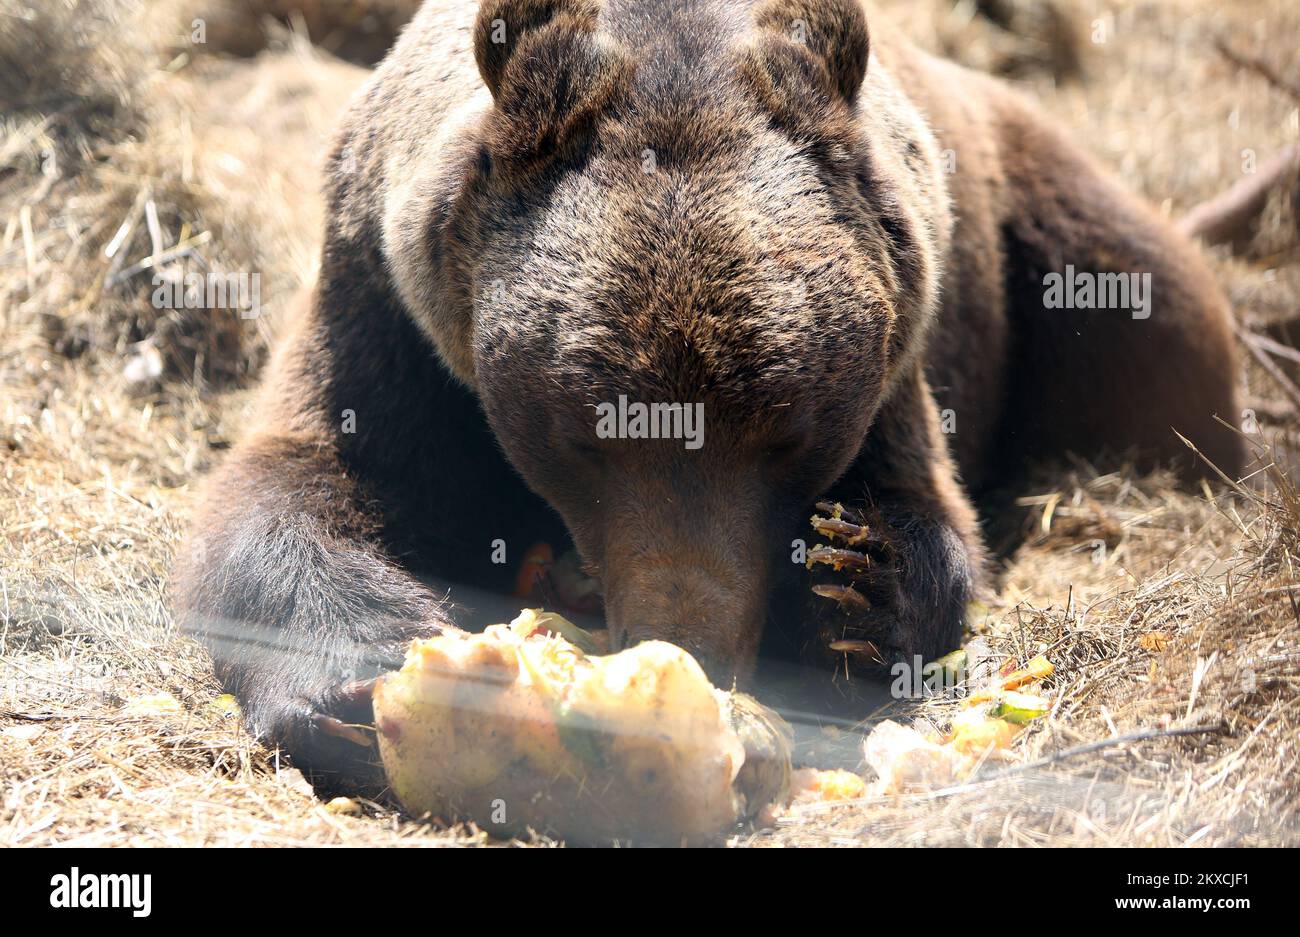 12.08.2019., Kuterevo, Kroatien - das Bärenschutzgebiet befindet sich in Kuterevo, in der Nähe von Otocac in der Lika-Region, Heimat vieler Tausender Braunbären in Kroatien. In Kuterevo gibt es derzeit 10 Bären, vier unter zehn Jahren und sechs ältere. Der älteste Bär Bruno ist 40 Jahre alt und der jüngste Matija ist sieben Monate alt. Der Bär wird von 16 Freiwilligen aus der ganzen Welt gepflegt, die die Bären säubern, füttern und willkommen heißen. Bären werden mit Obst, Gemüse und Getreide gefüttert, während des Sommers erhalten sie als Erfrischungseis und gefrorenes Obst und Gemüse. Das Refugium wird von mor besucht Stockfoto